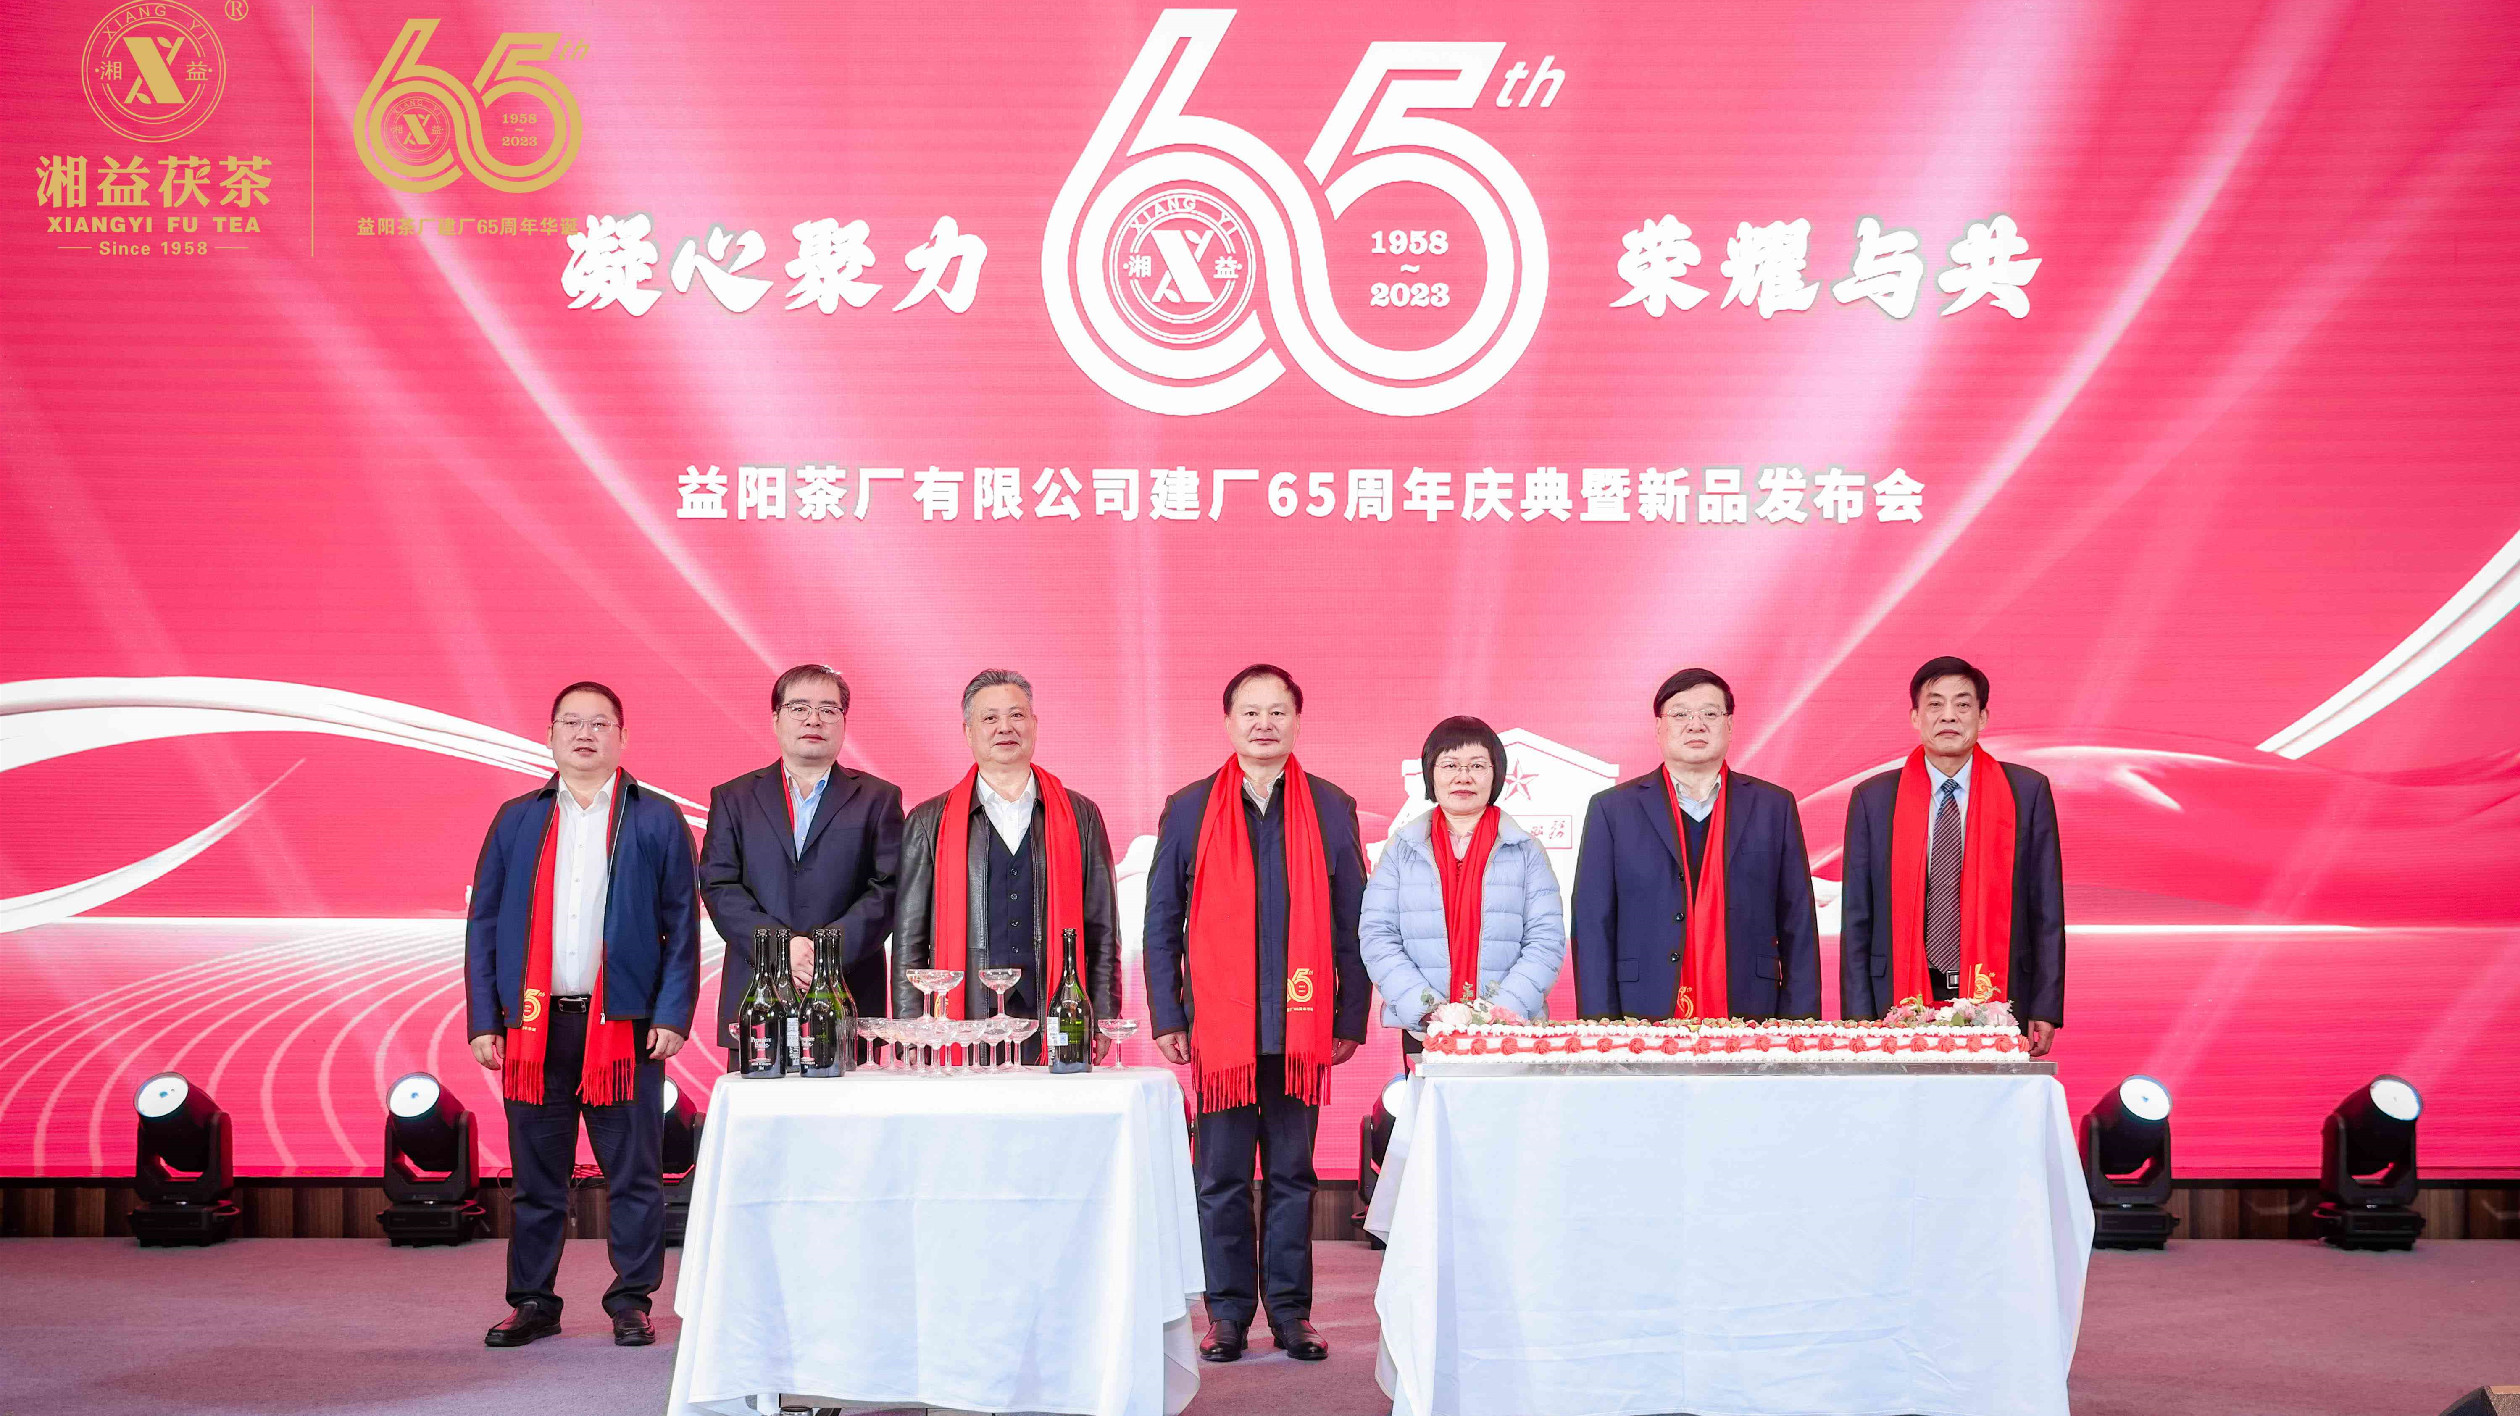 益陽茶廠有限公司65周年慶典暨新品發佈會圓滿舉行